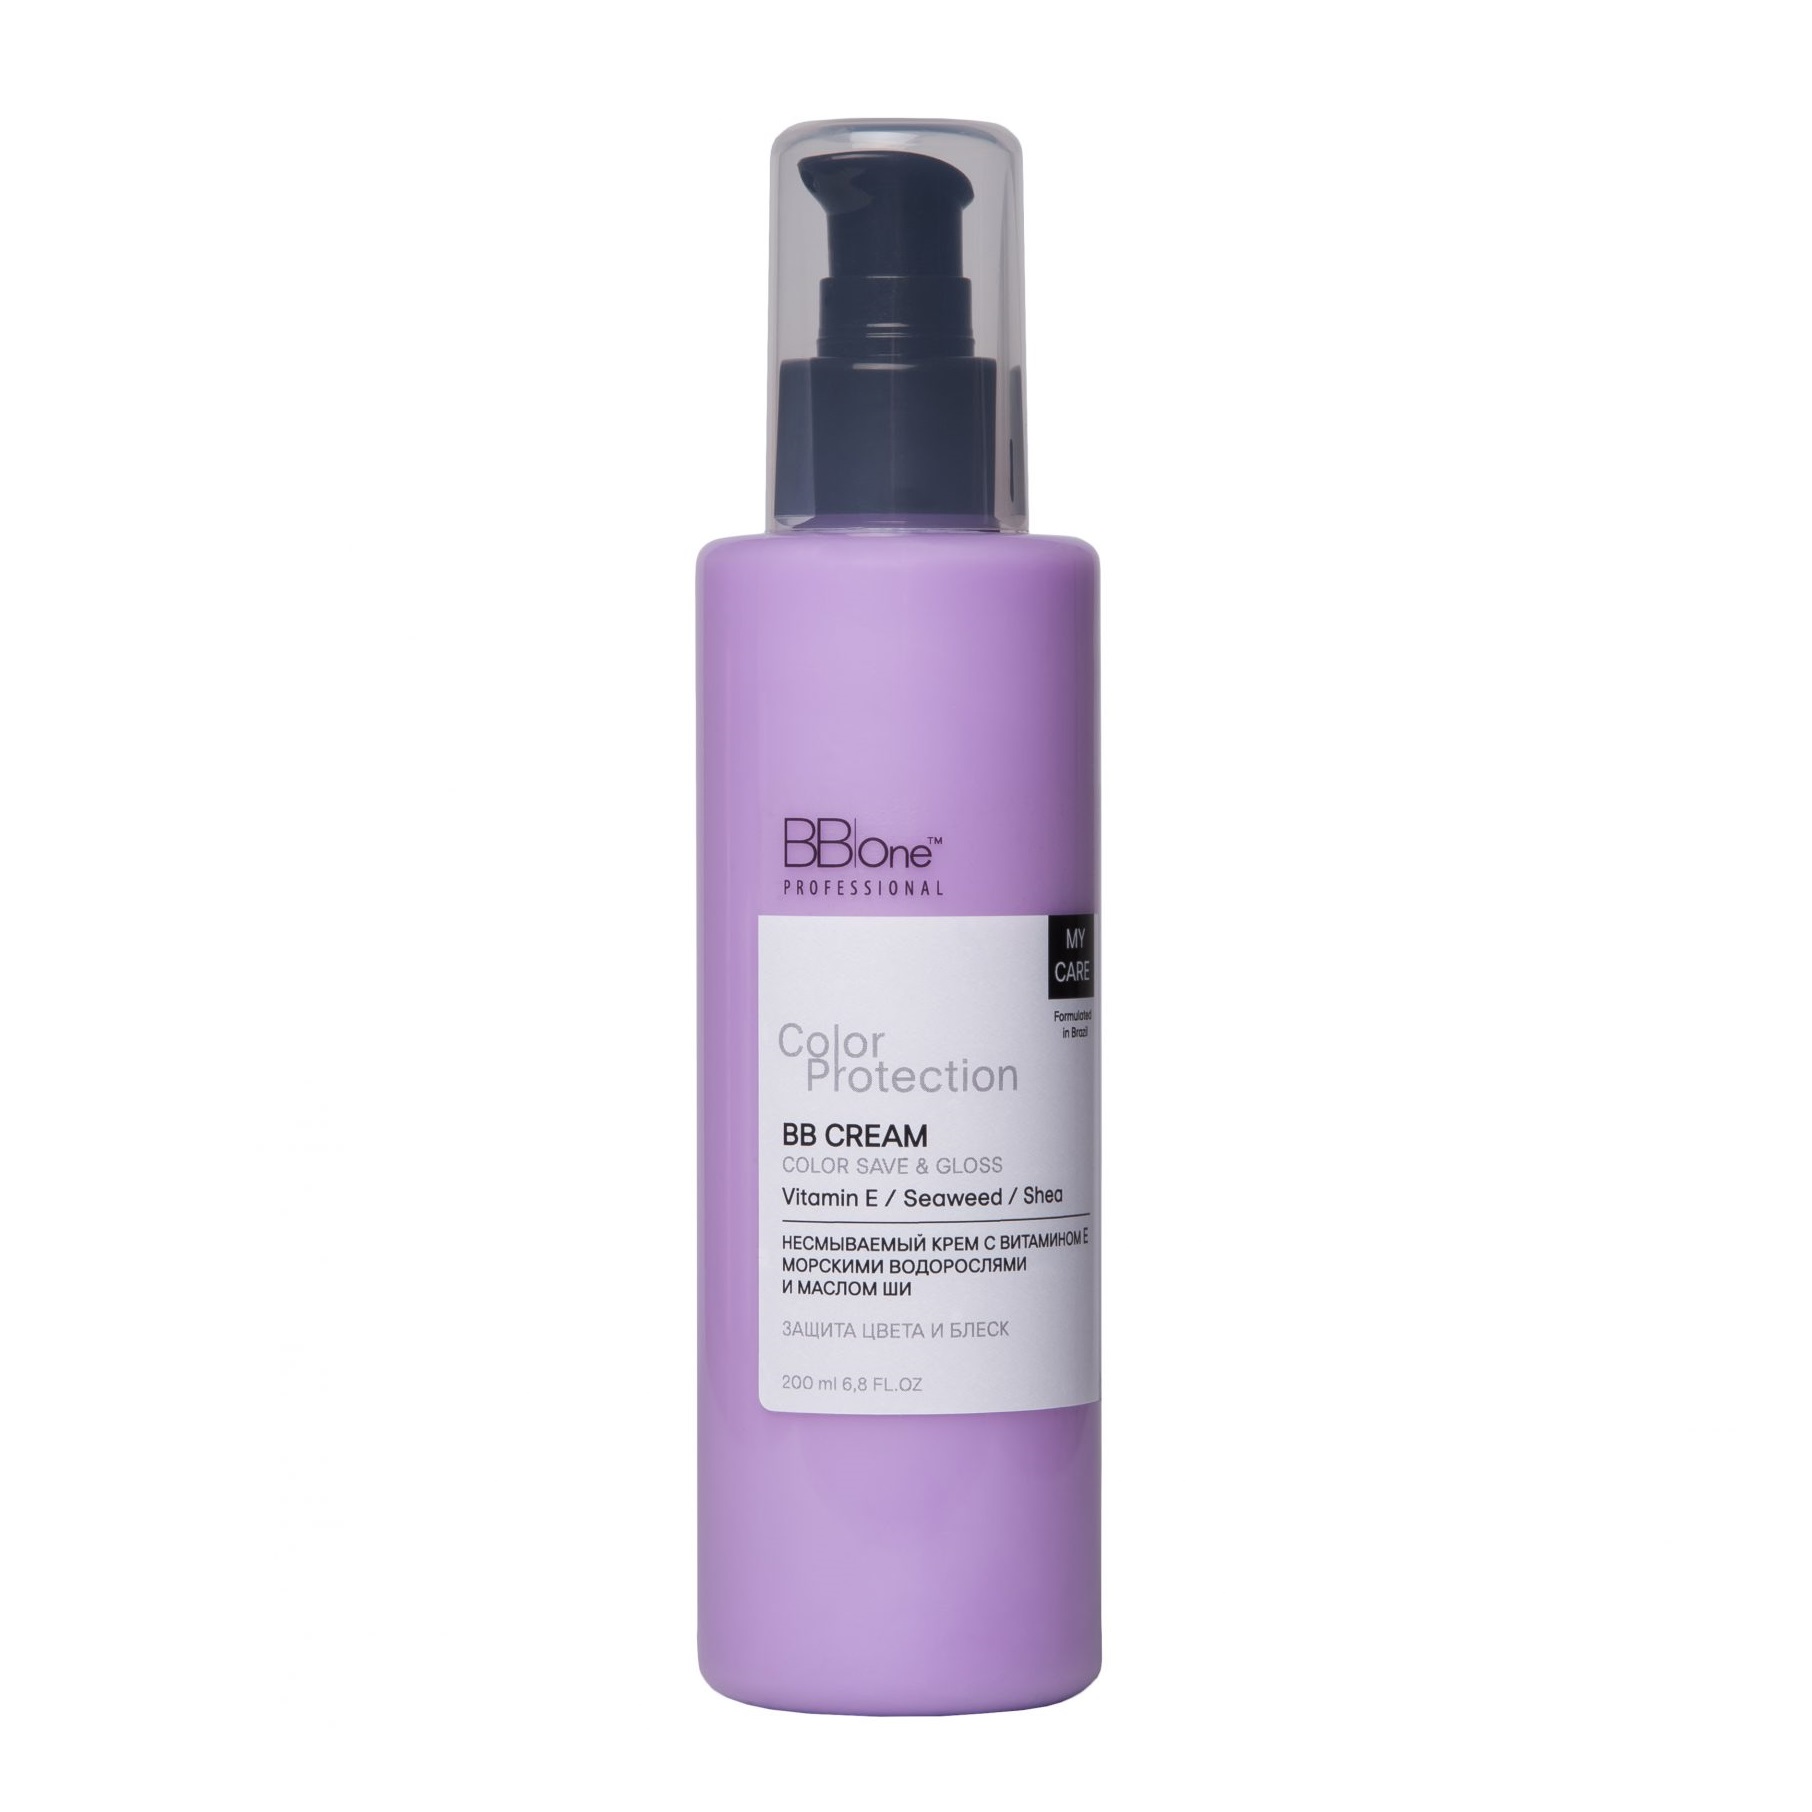 BB ONE, Несмываемый крем для окрашенных волос Color Protection, 200 мл.